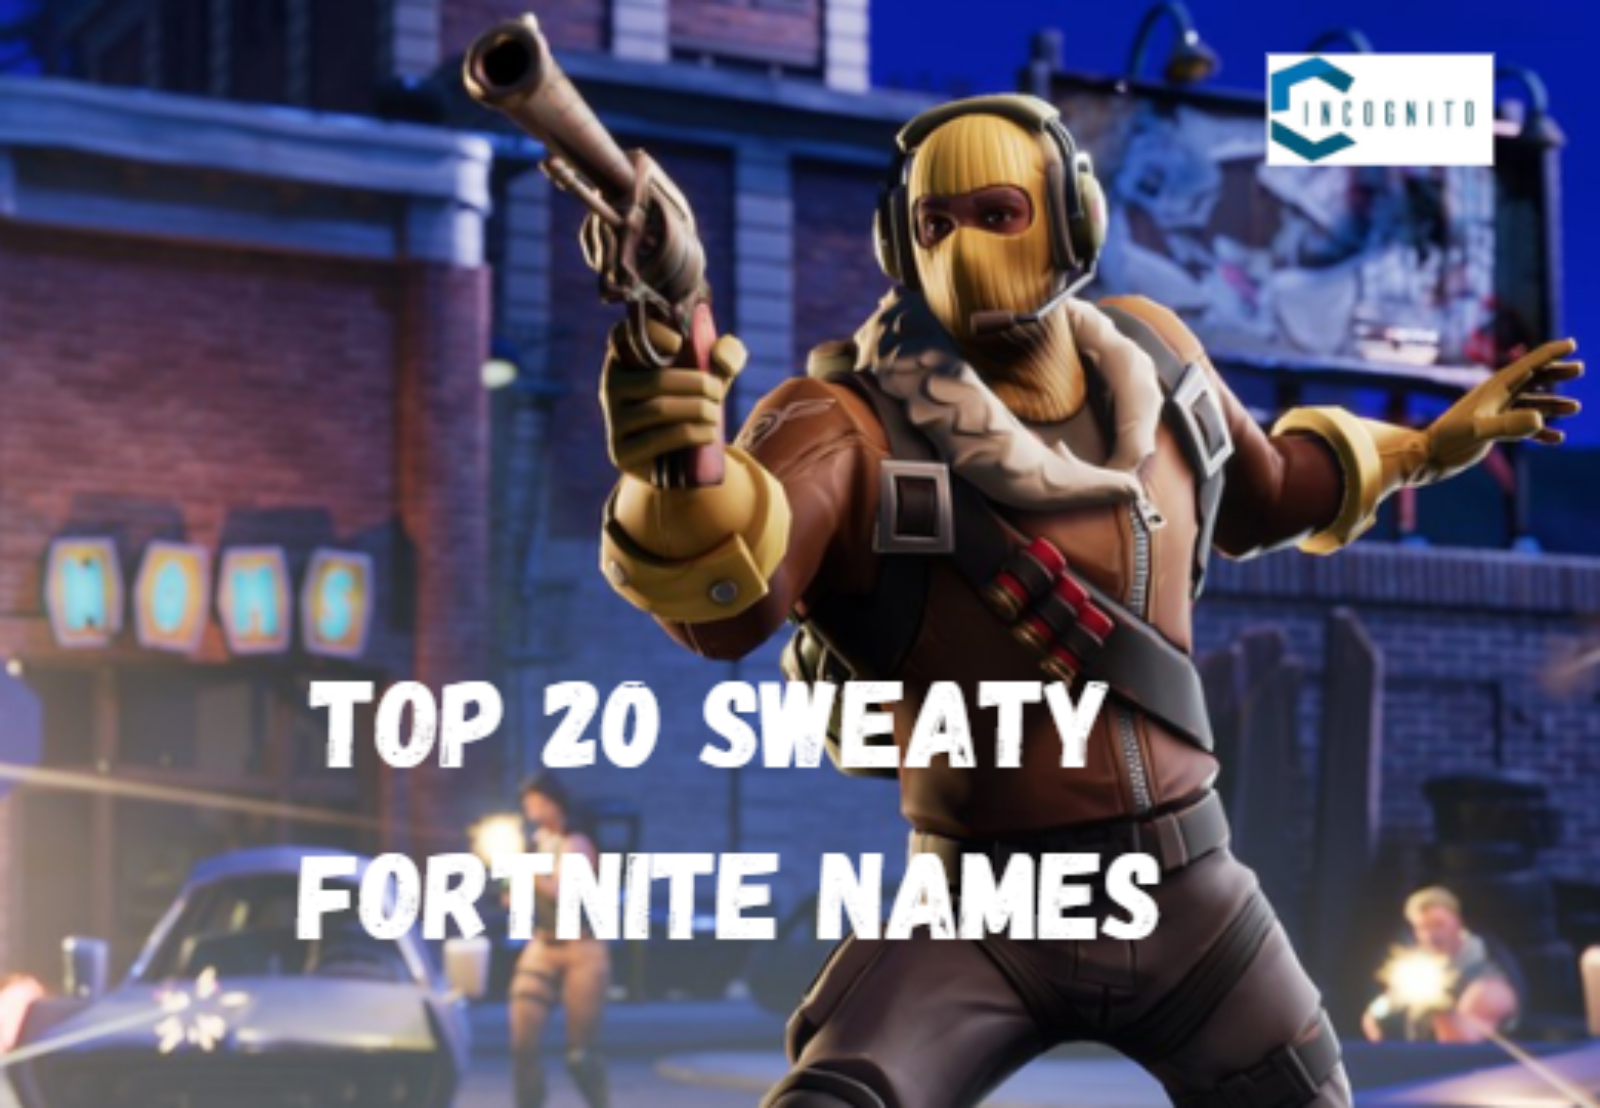 Top Sweaty Fortnite Names